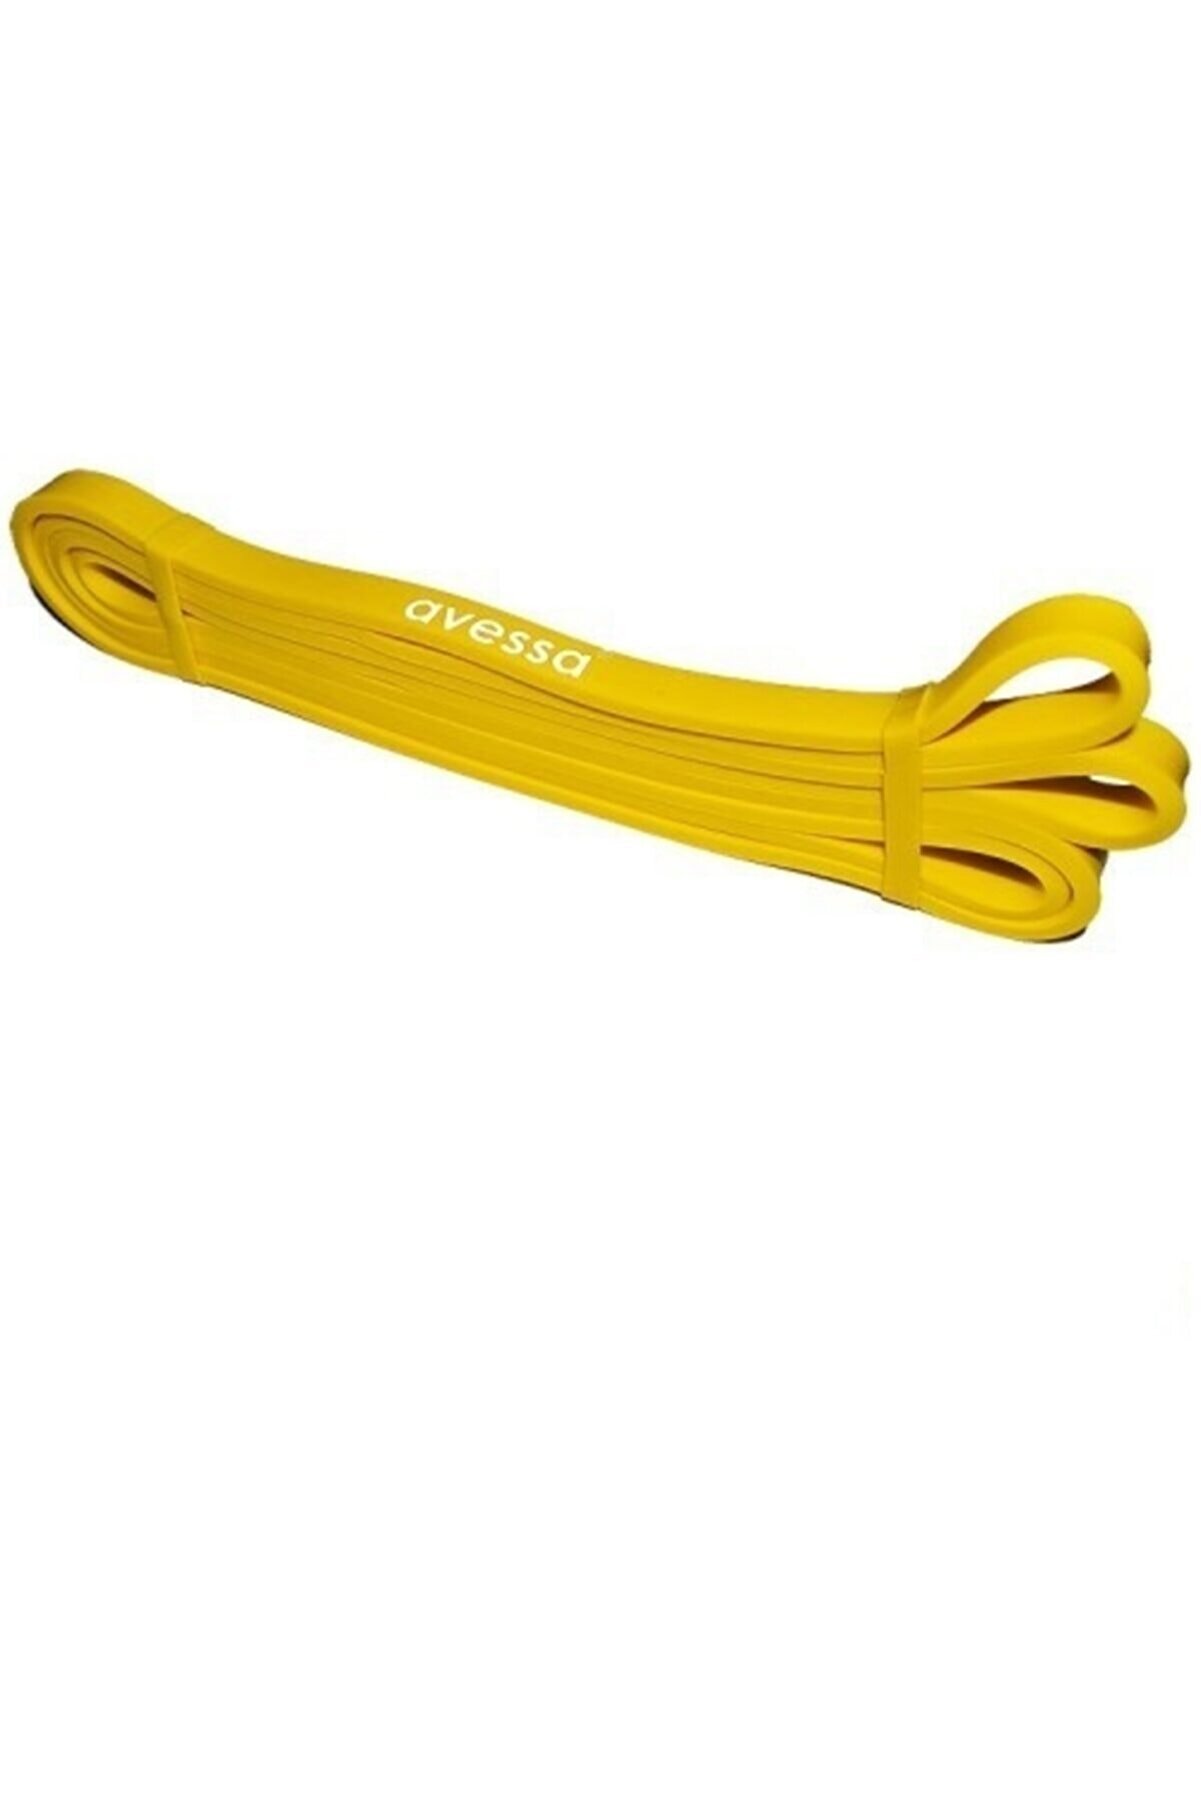 Avessa Sarı Lpb Güç Bandı Direnç Egzersiz Lastiği 13mm